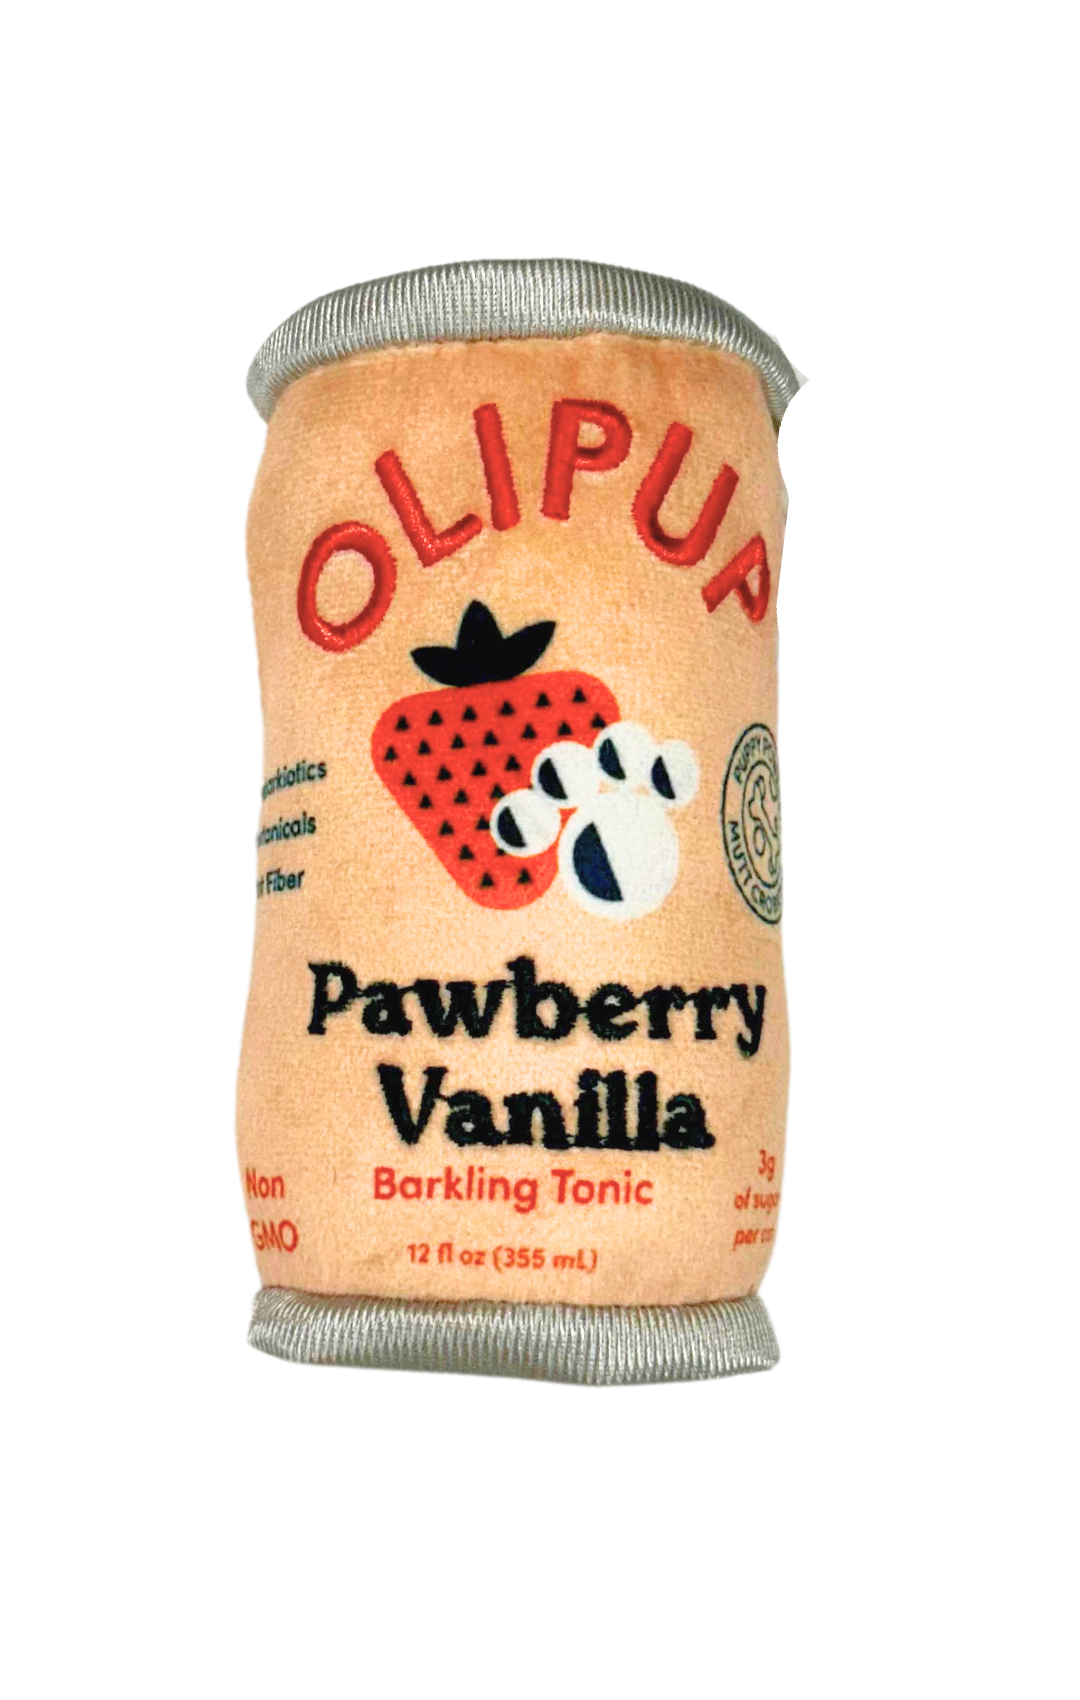 Olipup Plush Dog Toy